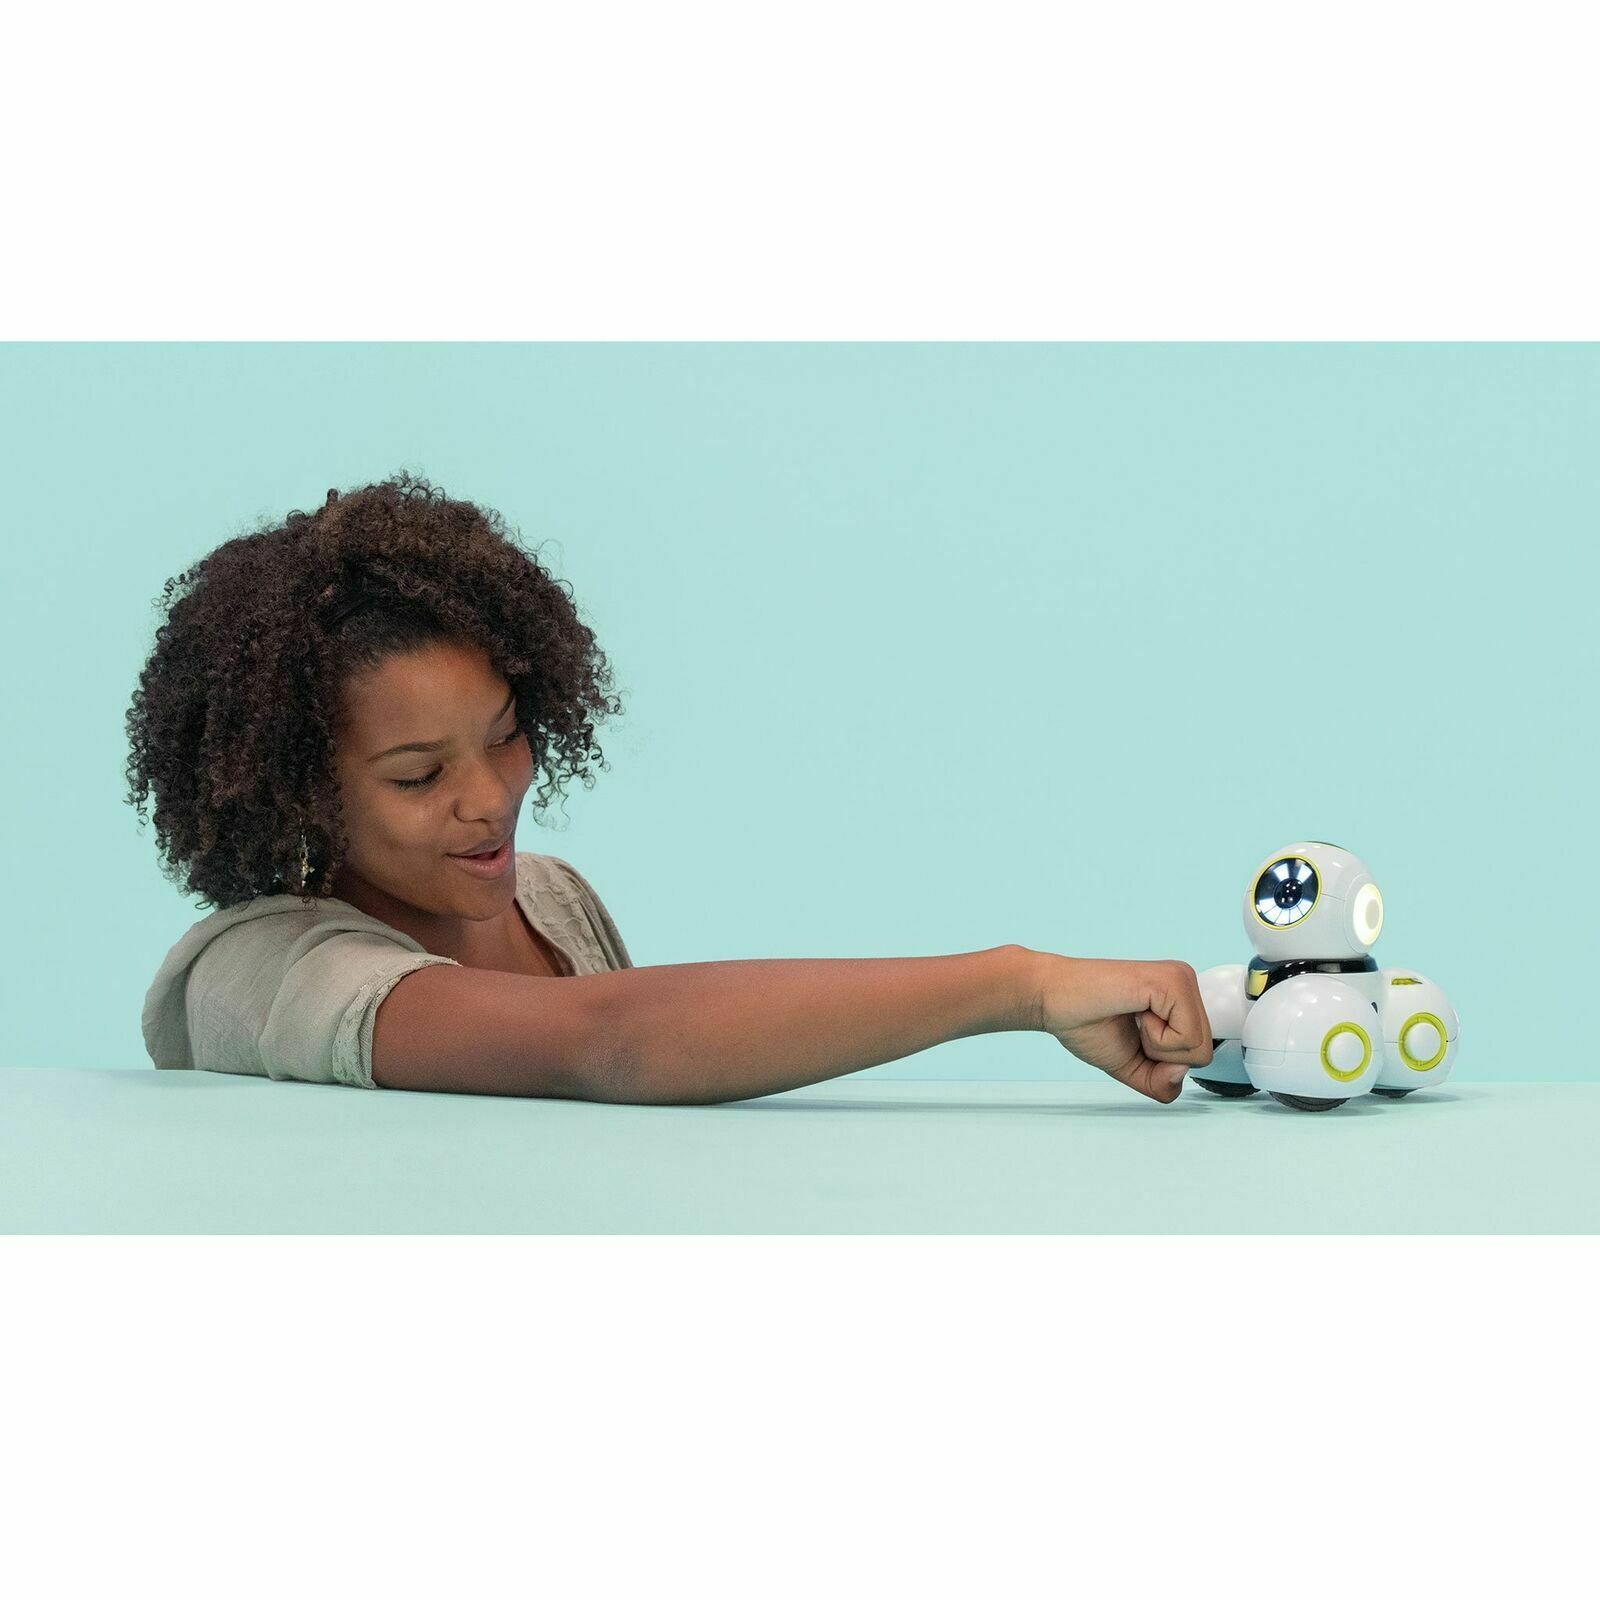  Wonder Workshop Cue – Coding Robot for Kids 10+